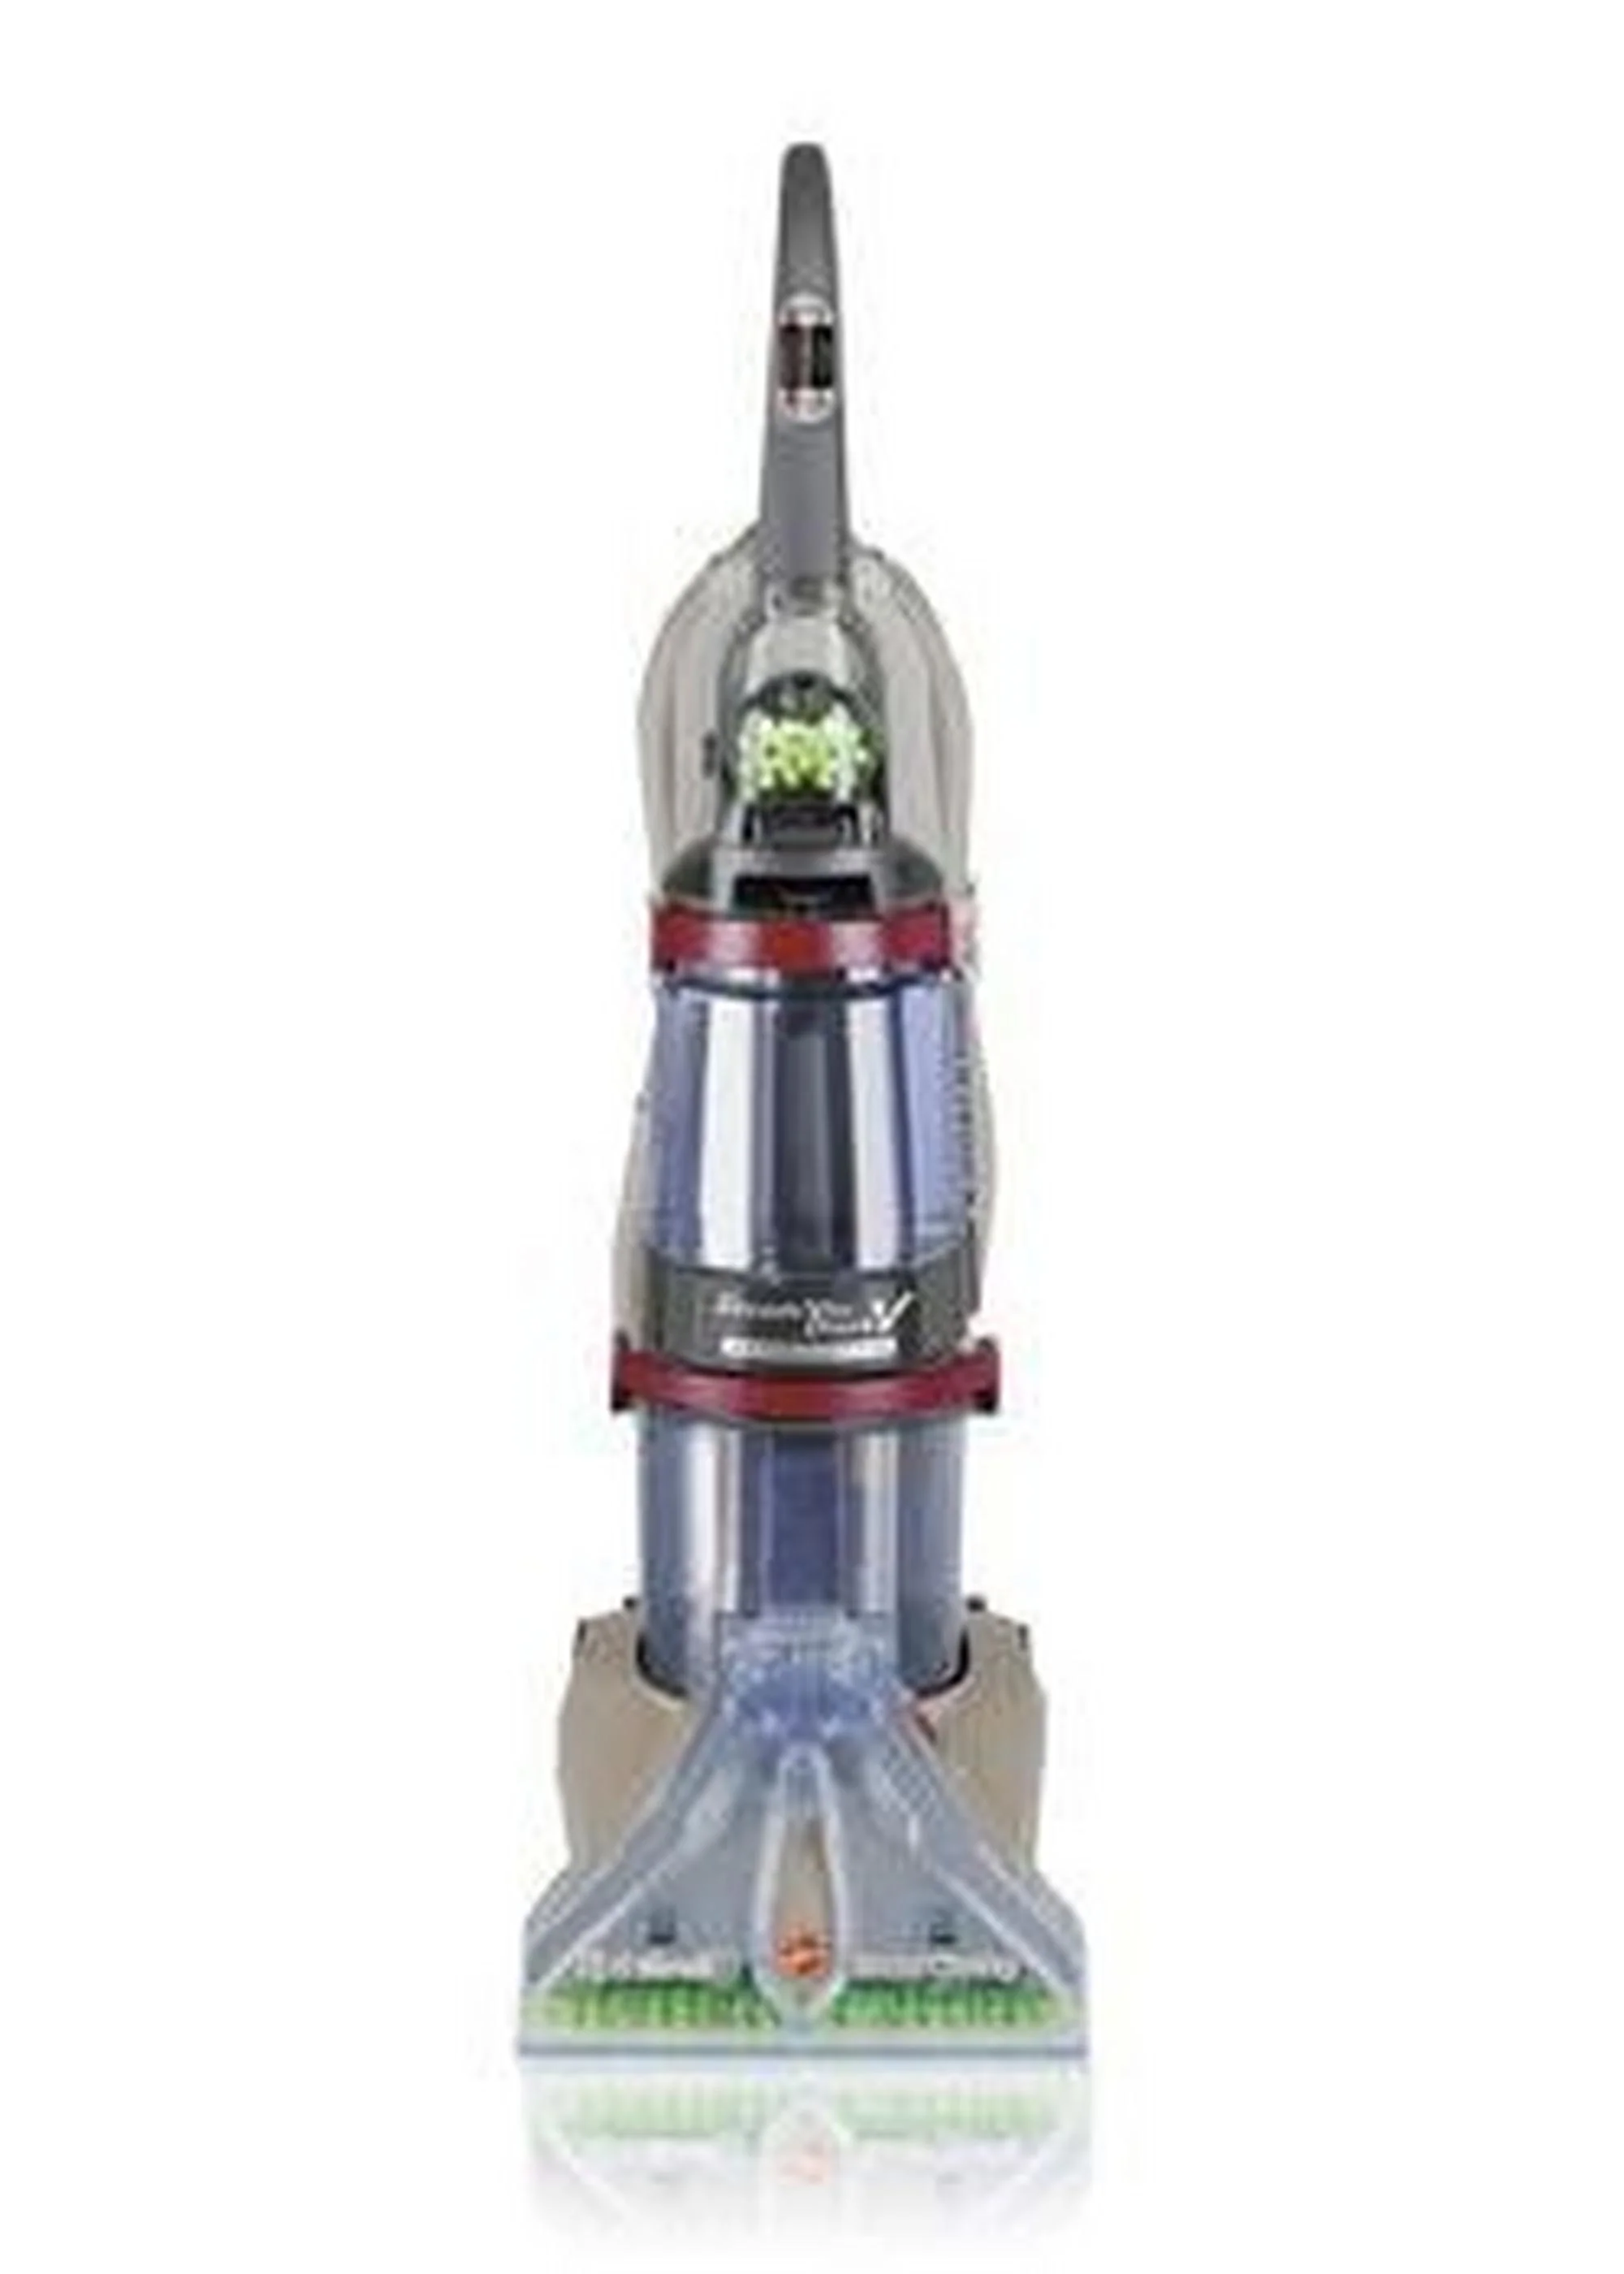 SteamVac Bagless Vacuum Cleaner